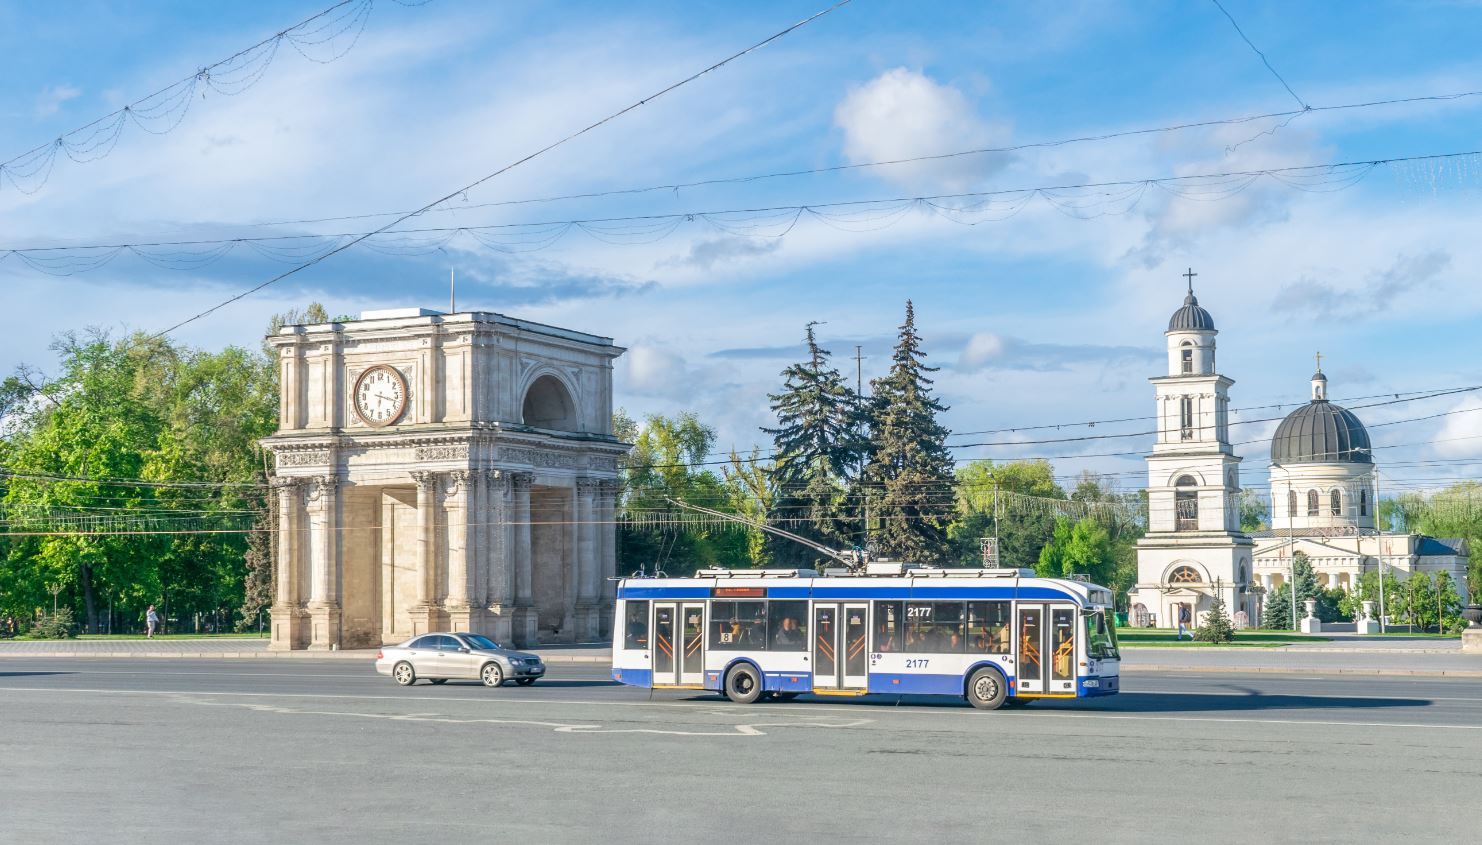 public transport in Moldova